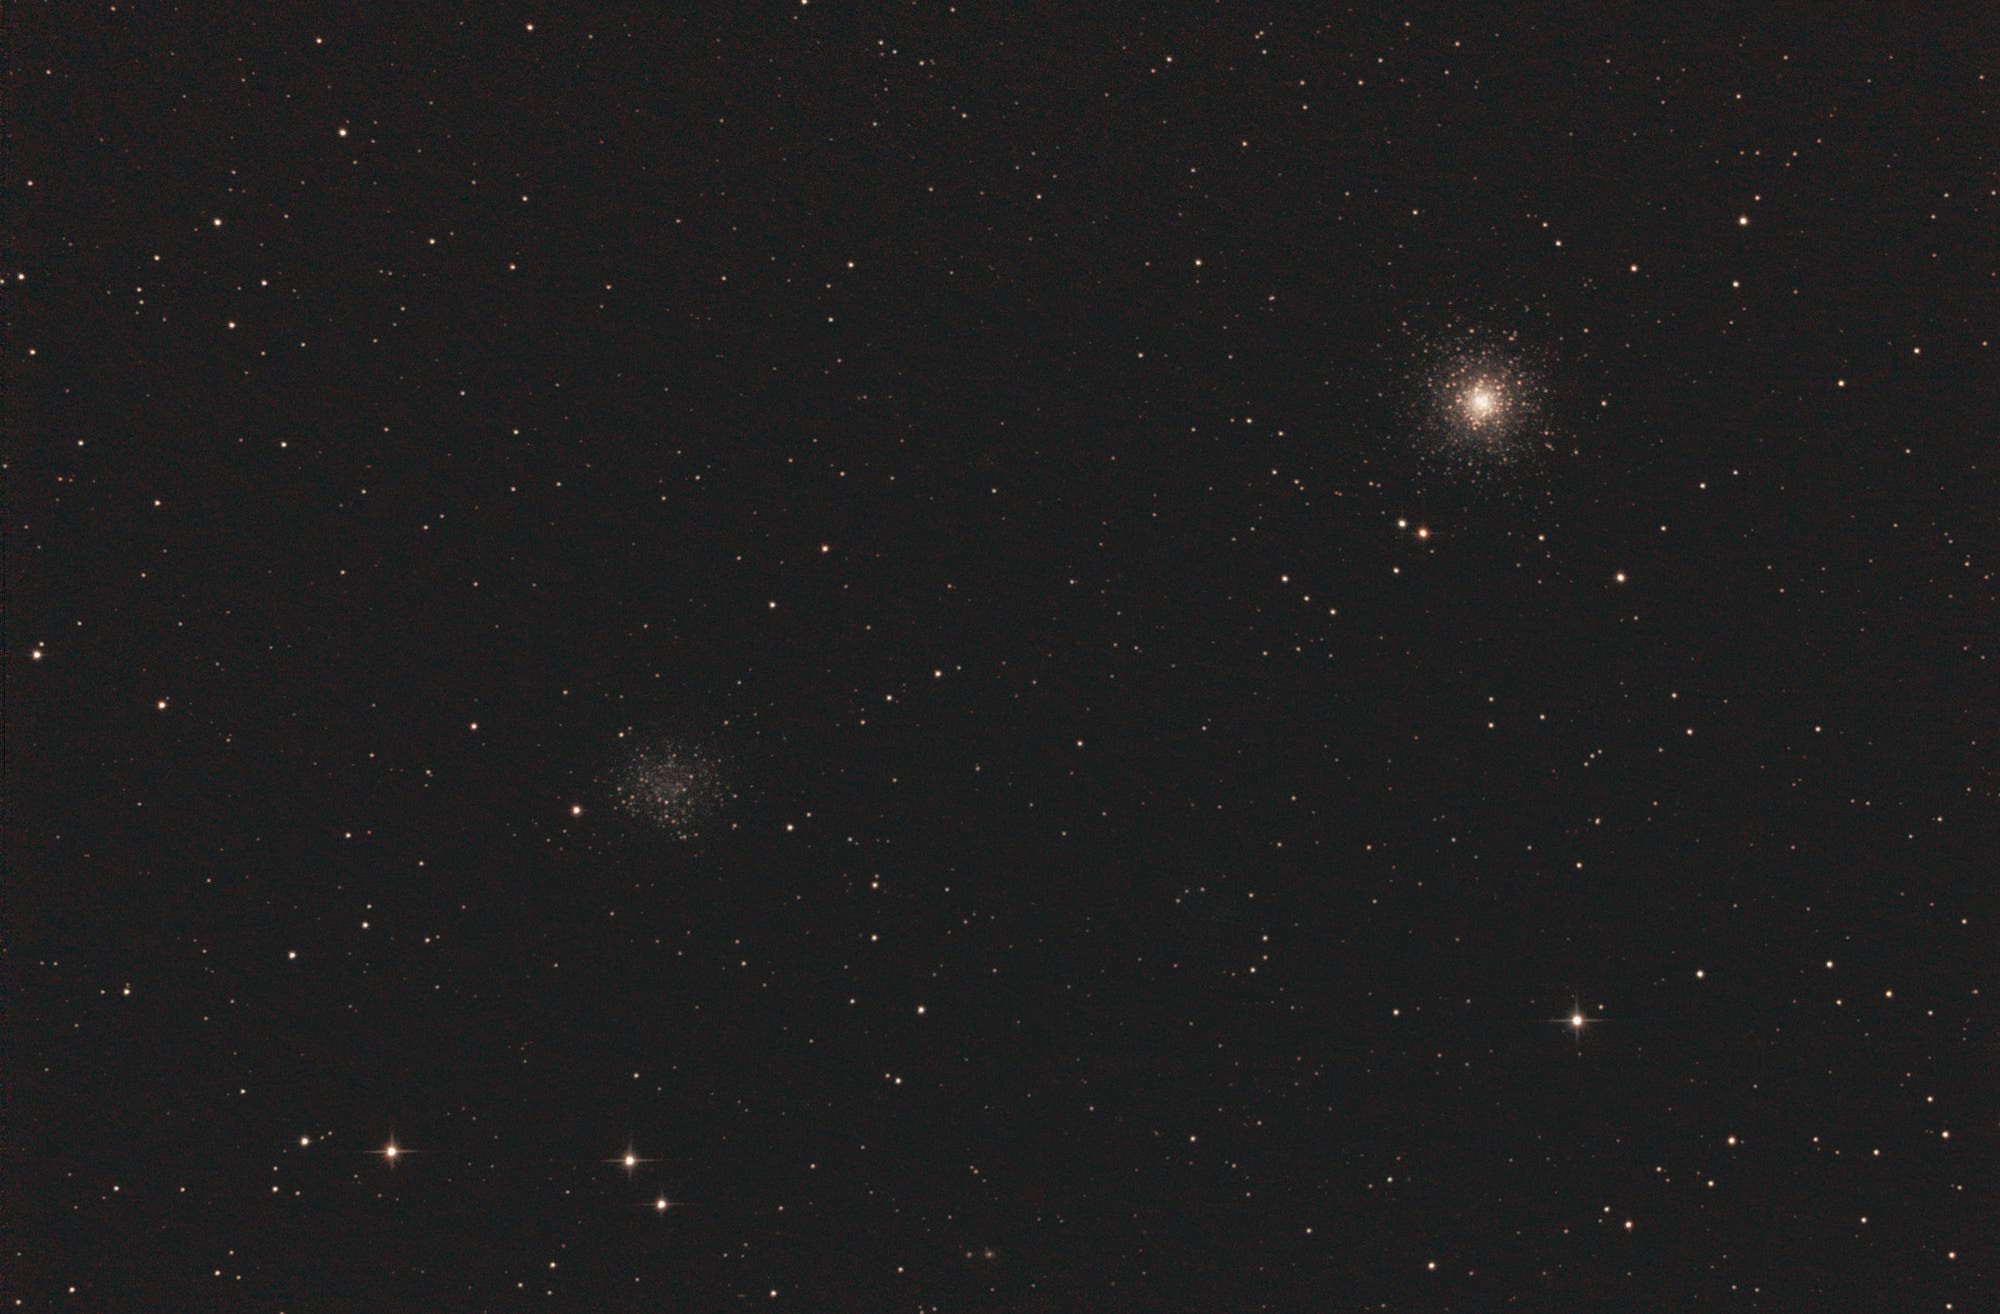 Kugelsternhaufen M53 und NGC 5053 im Sternbild Coma Berenices (Haar der Berenike)